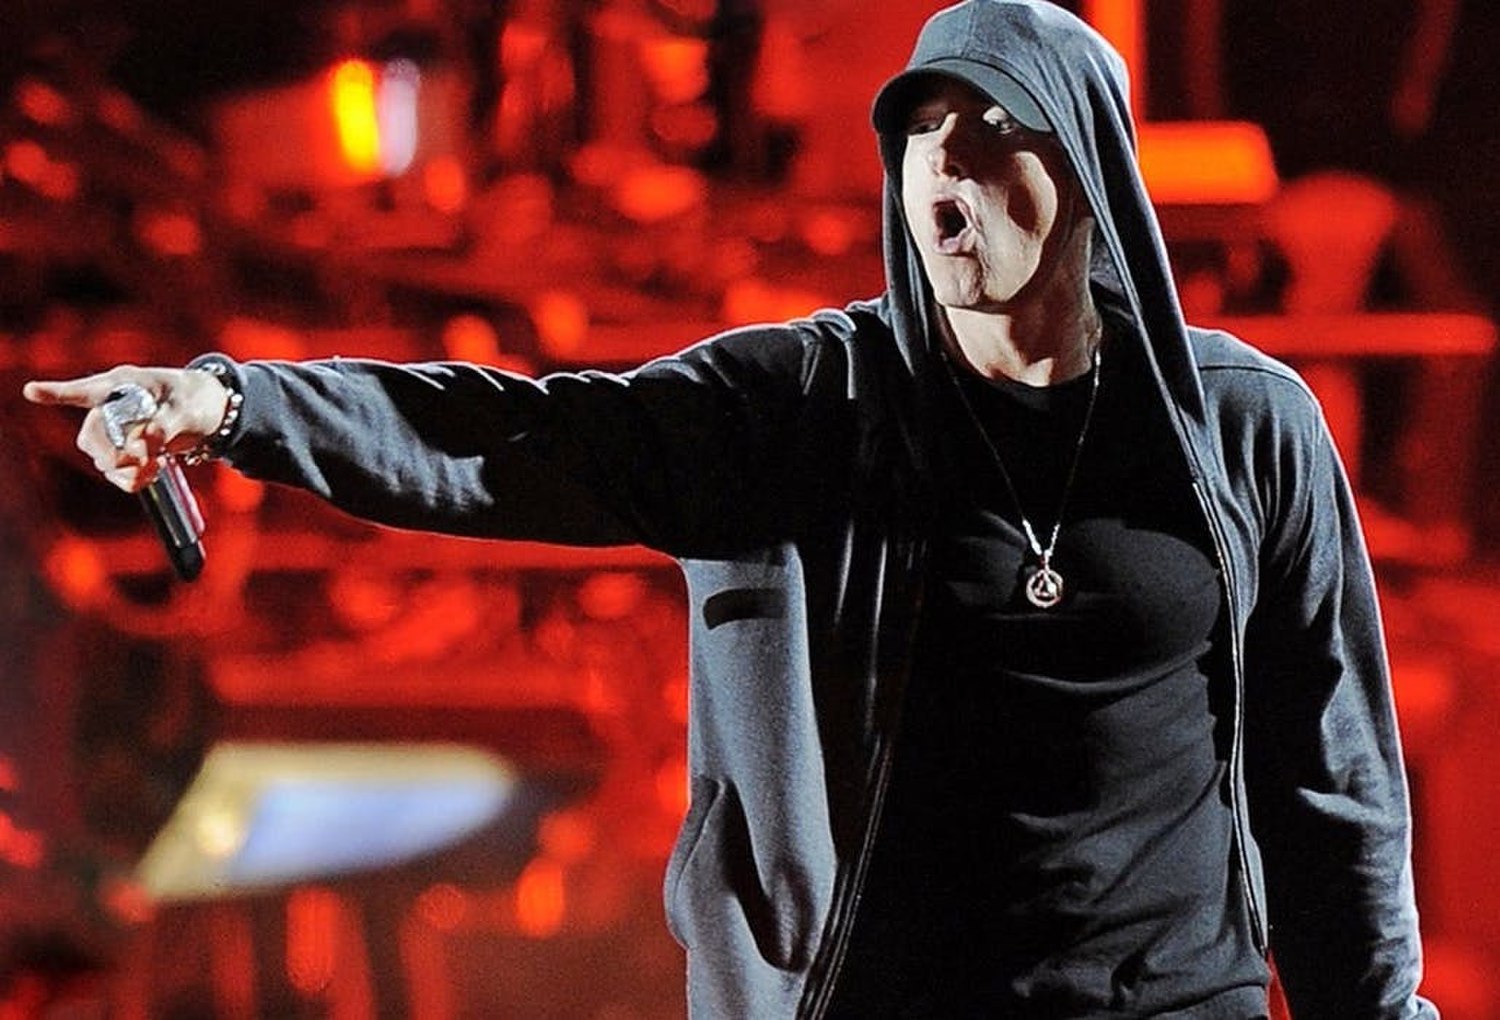 Mockingbird  Single/EP de Eminem 